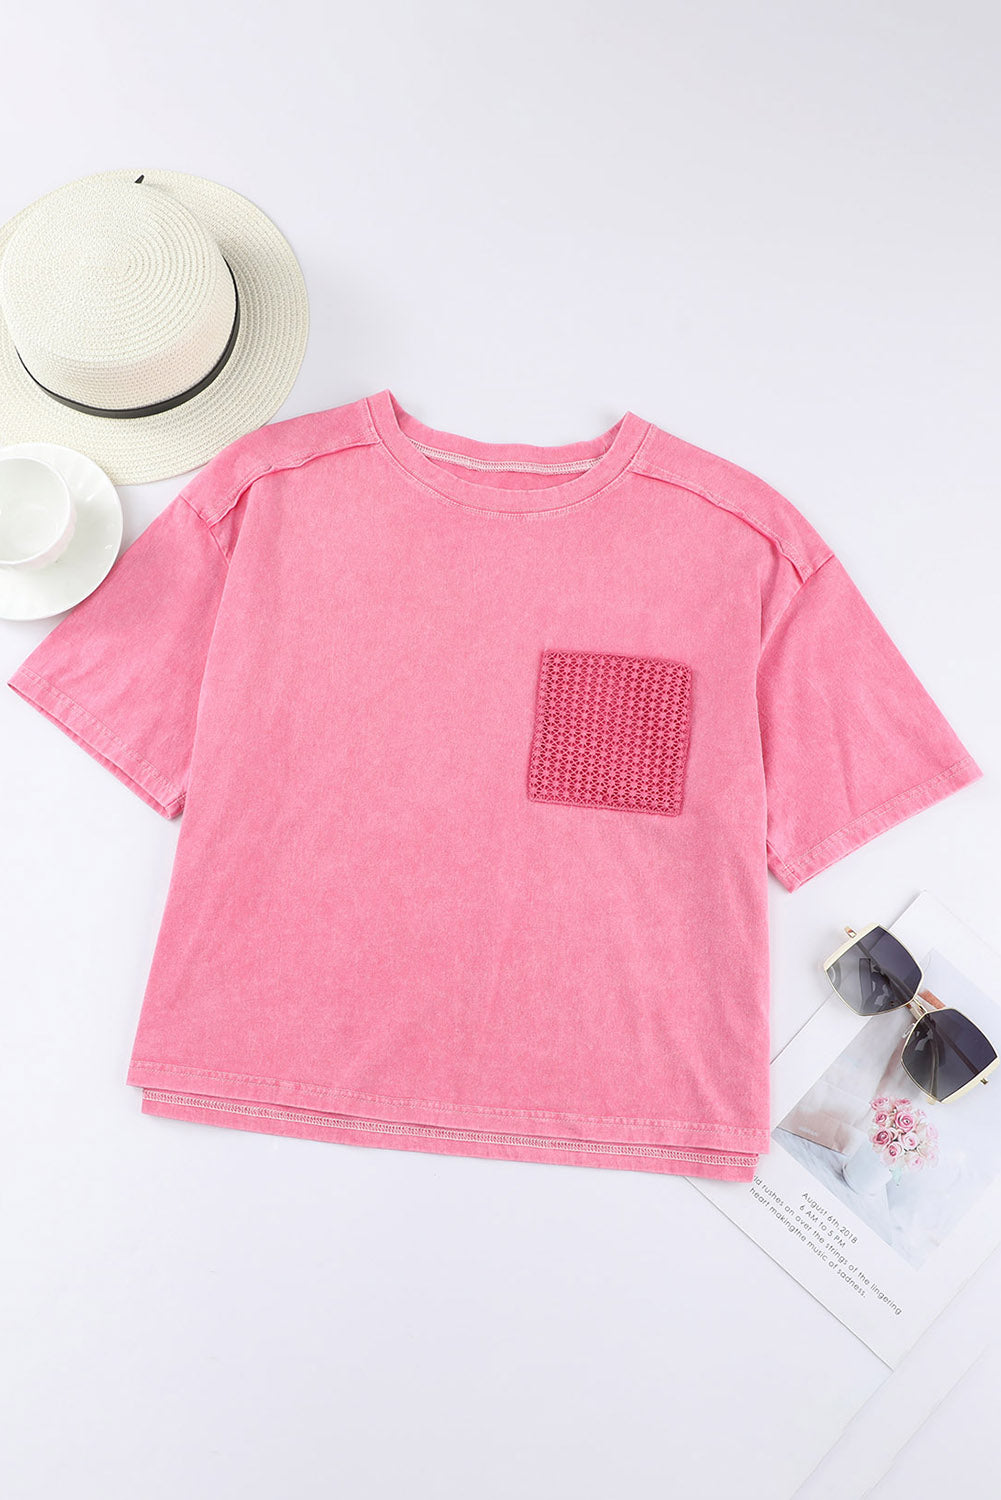 Rosafarbenes T-Shirt mit aufgesetzter Tasche und Spitze in Acid-Waschung